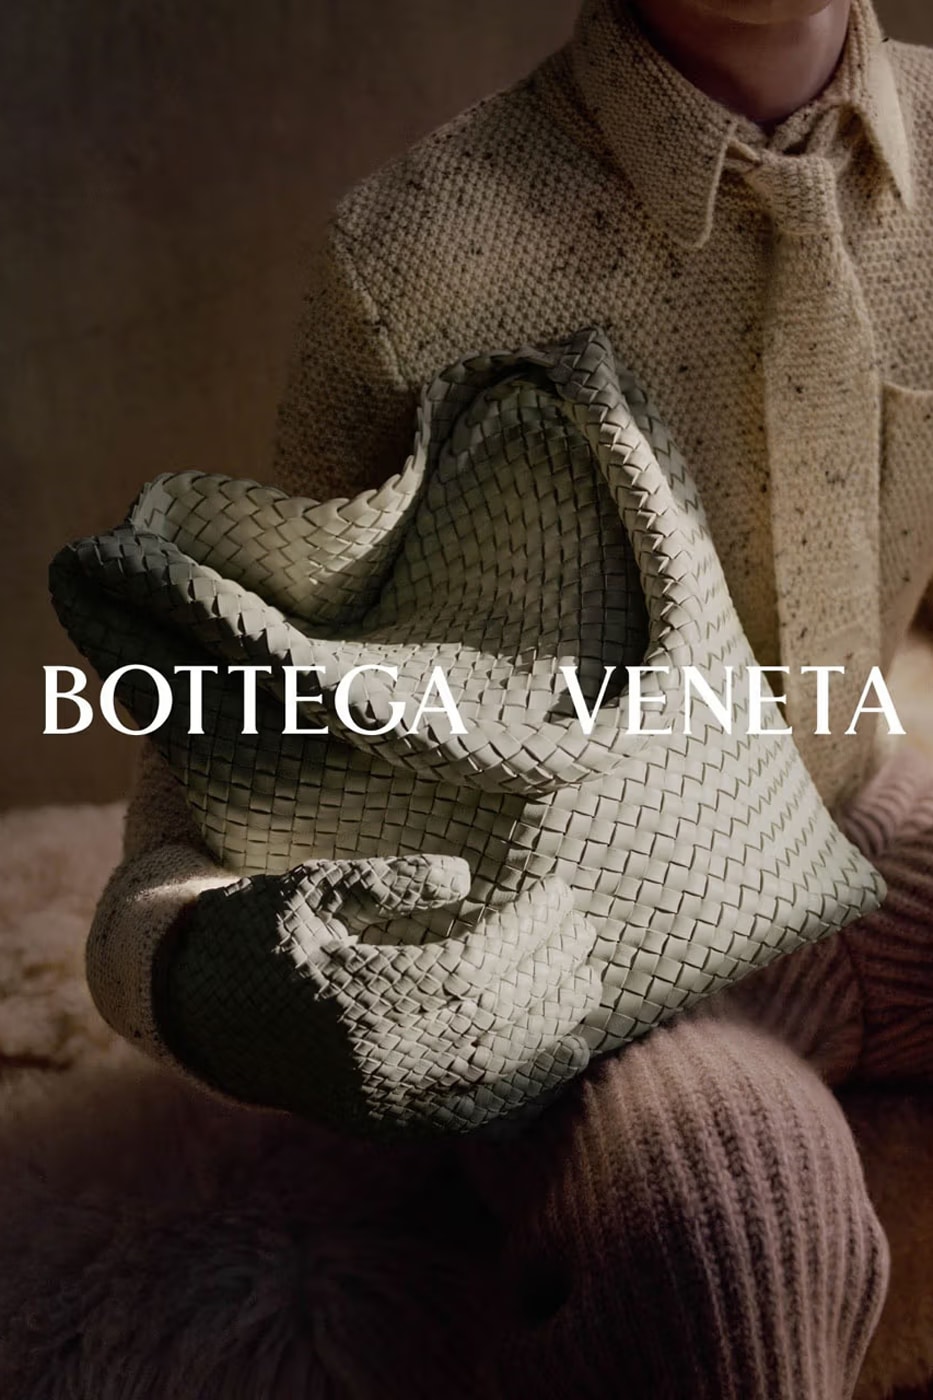 BOTTEGA VENETA INTRODUCES ITS “ON THE GO” WINTER 2023 CAMPAIGN